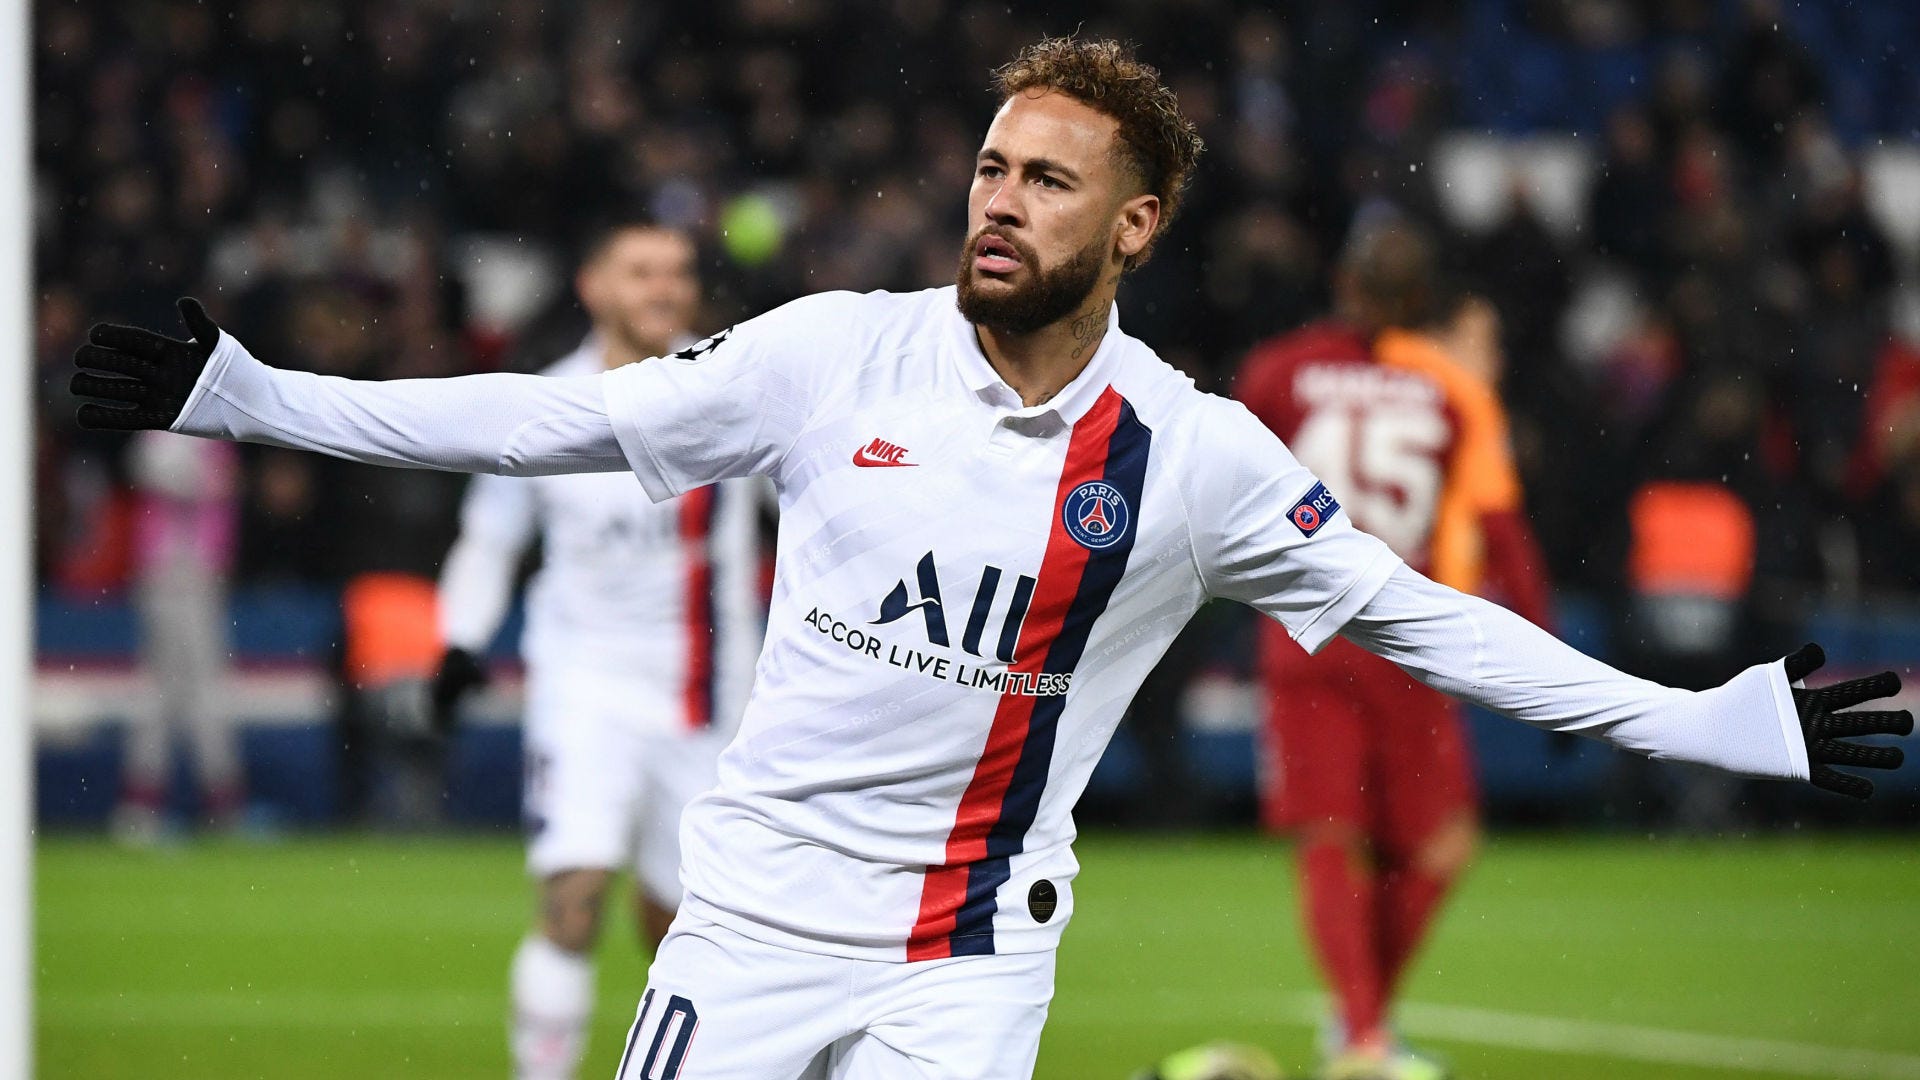 Laan tempo groei Neymar verklaart veelbesproken gebaar na goal tegen Galatasaray | Goal.com